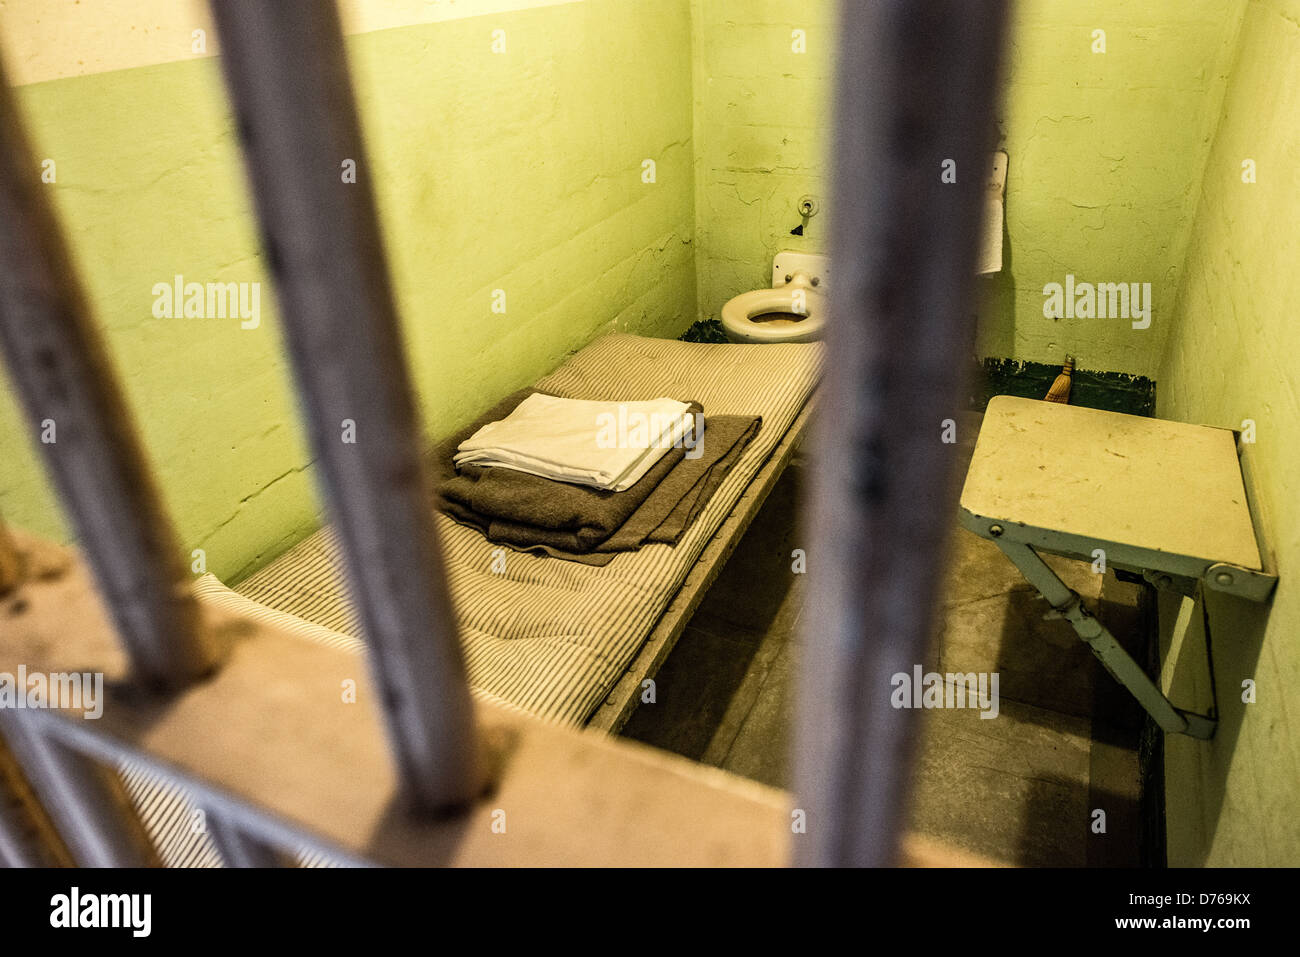 SAN FRANCISCO, Kalifornien - das Innere einer der Zellen des berühmten Gefängnisses von Alcatraz auf der Insel Alcatraz in der Bucht von San Francisco. Alcatraz ist bekannt für seine berüchtigten Häftlinge und die Gerüchte Unausweichlichkeit. Heute ist Alcatraz eine bedeutende Touristenattraktion und ein National Park Service-Standort, der Einblicke in das Gefängnissystem und historische Ereignisse des 20. Jahrhunderts bietet. Stockfoto